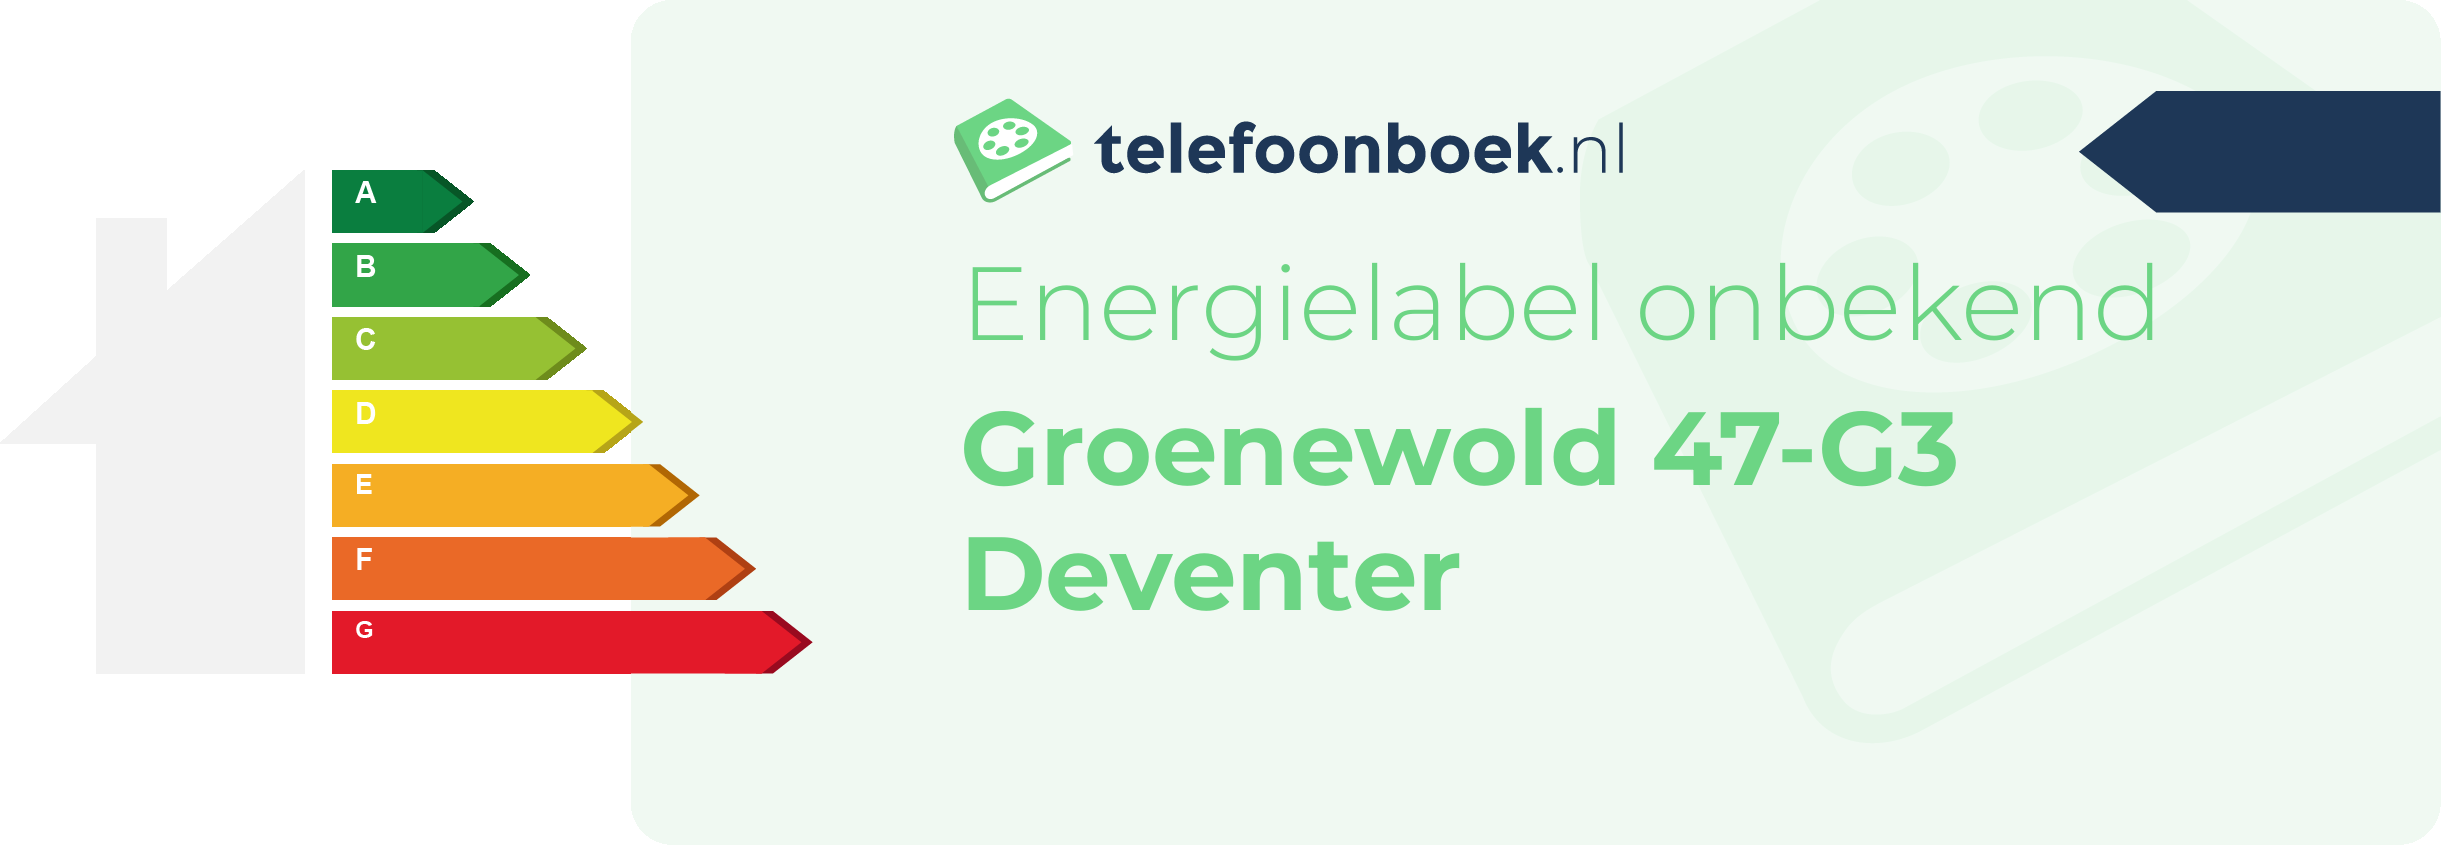 Energielabel Groenewold 47-G3 Deventer